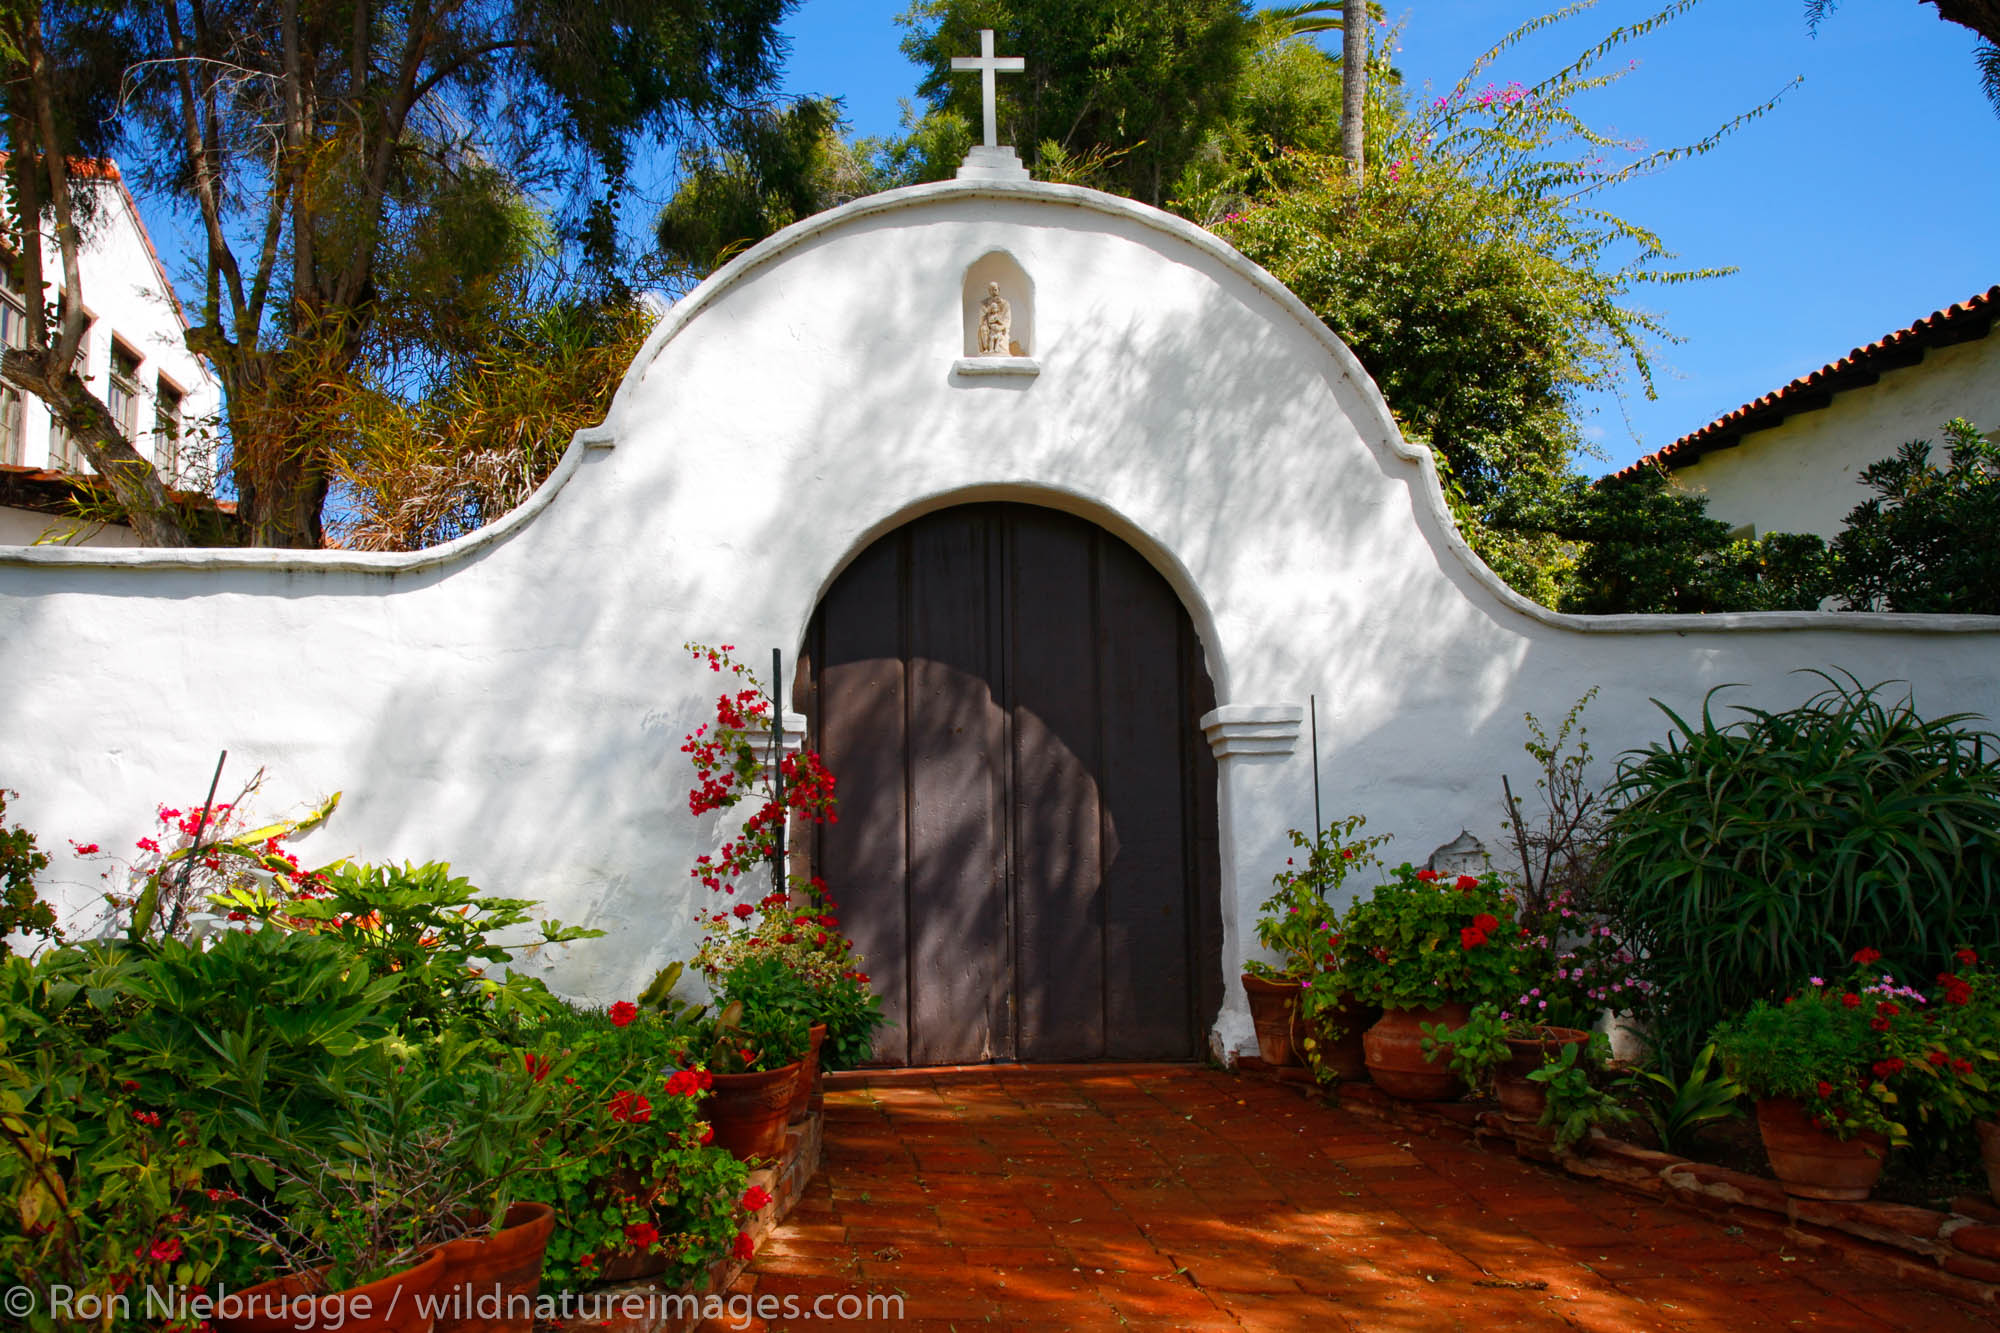 Mission Basilica San Diego de Alcala, San Diego, California.